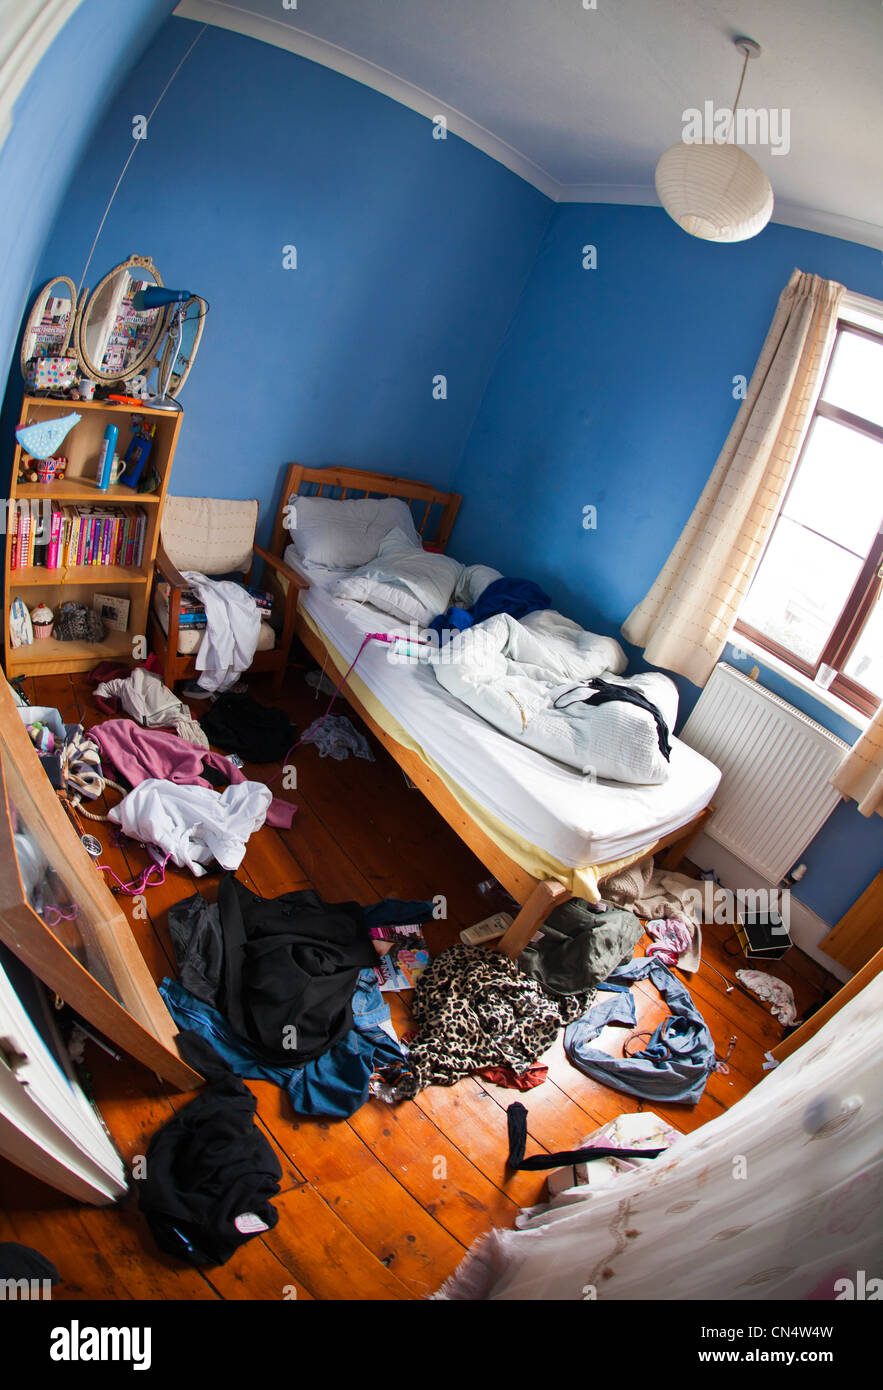 La chambre en désordre, désordre d'une adolescente Photo Stock - Alamy